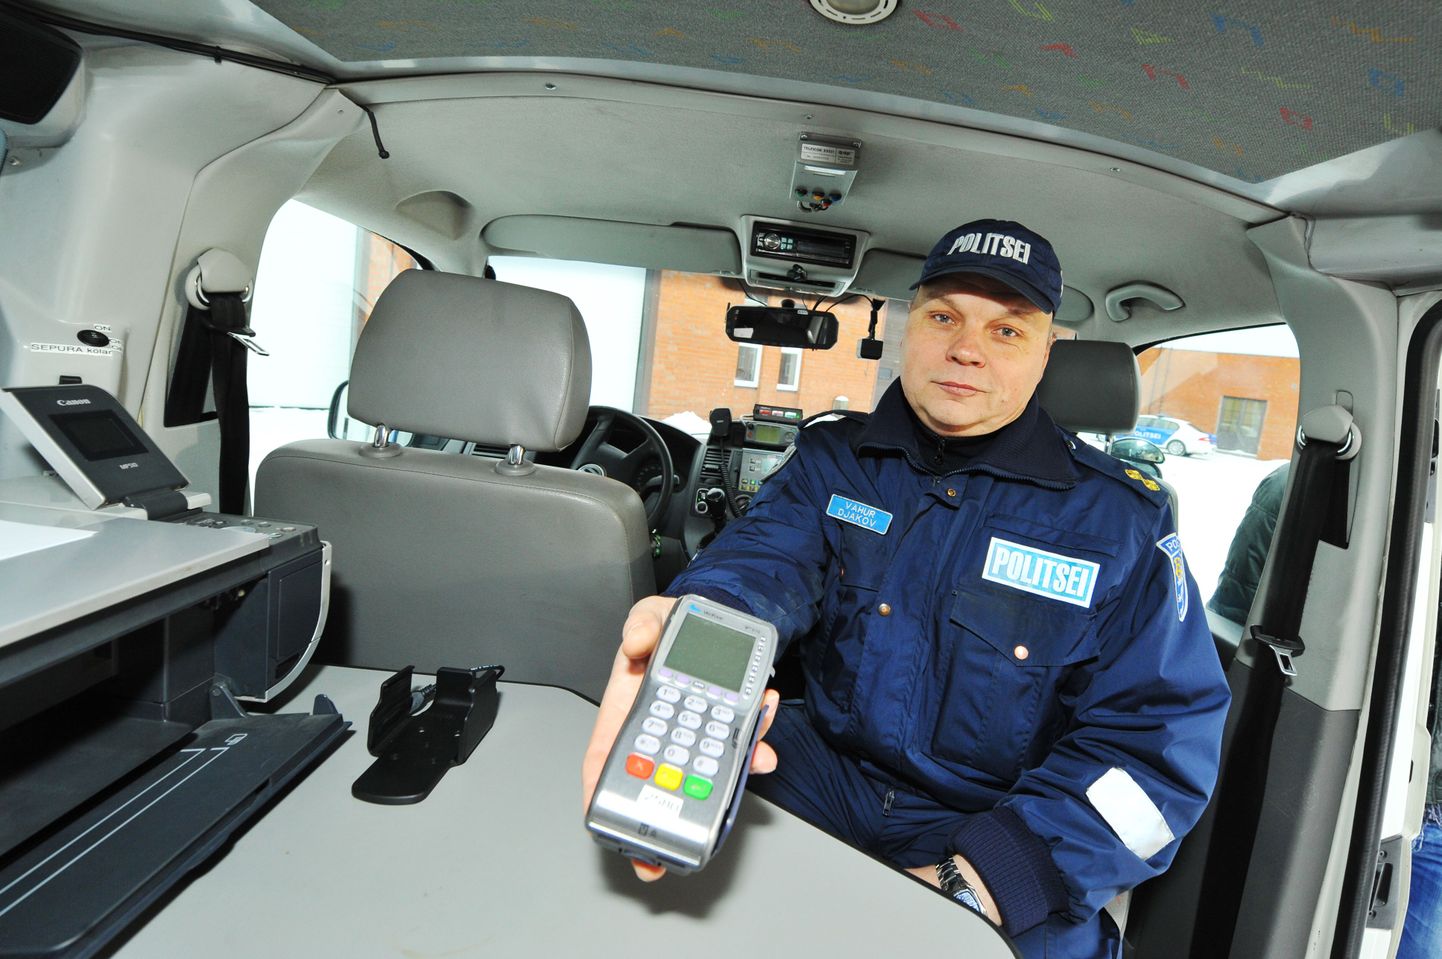 Liikluspolitseinik Vahur Djakov näitas jaanuaris politseibussi paigaldatud kaardimakseterminali.